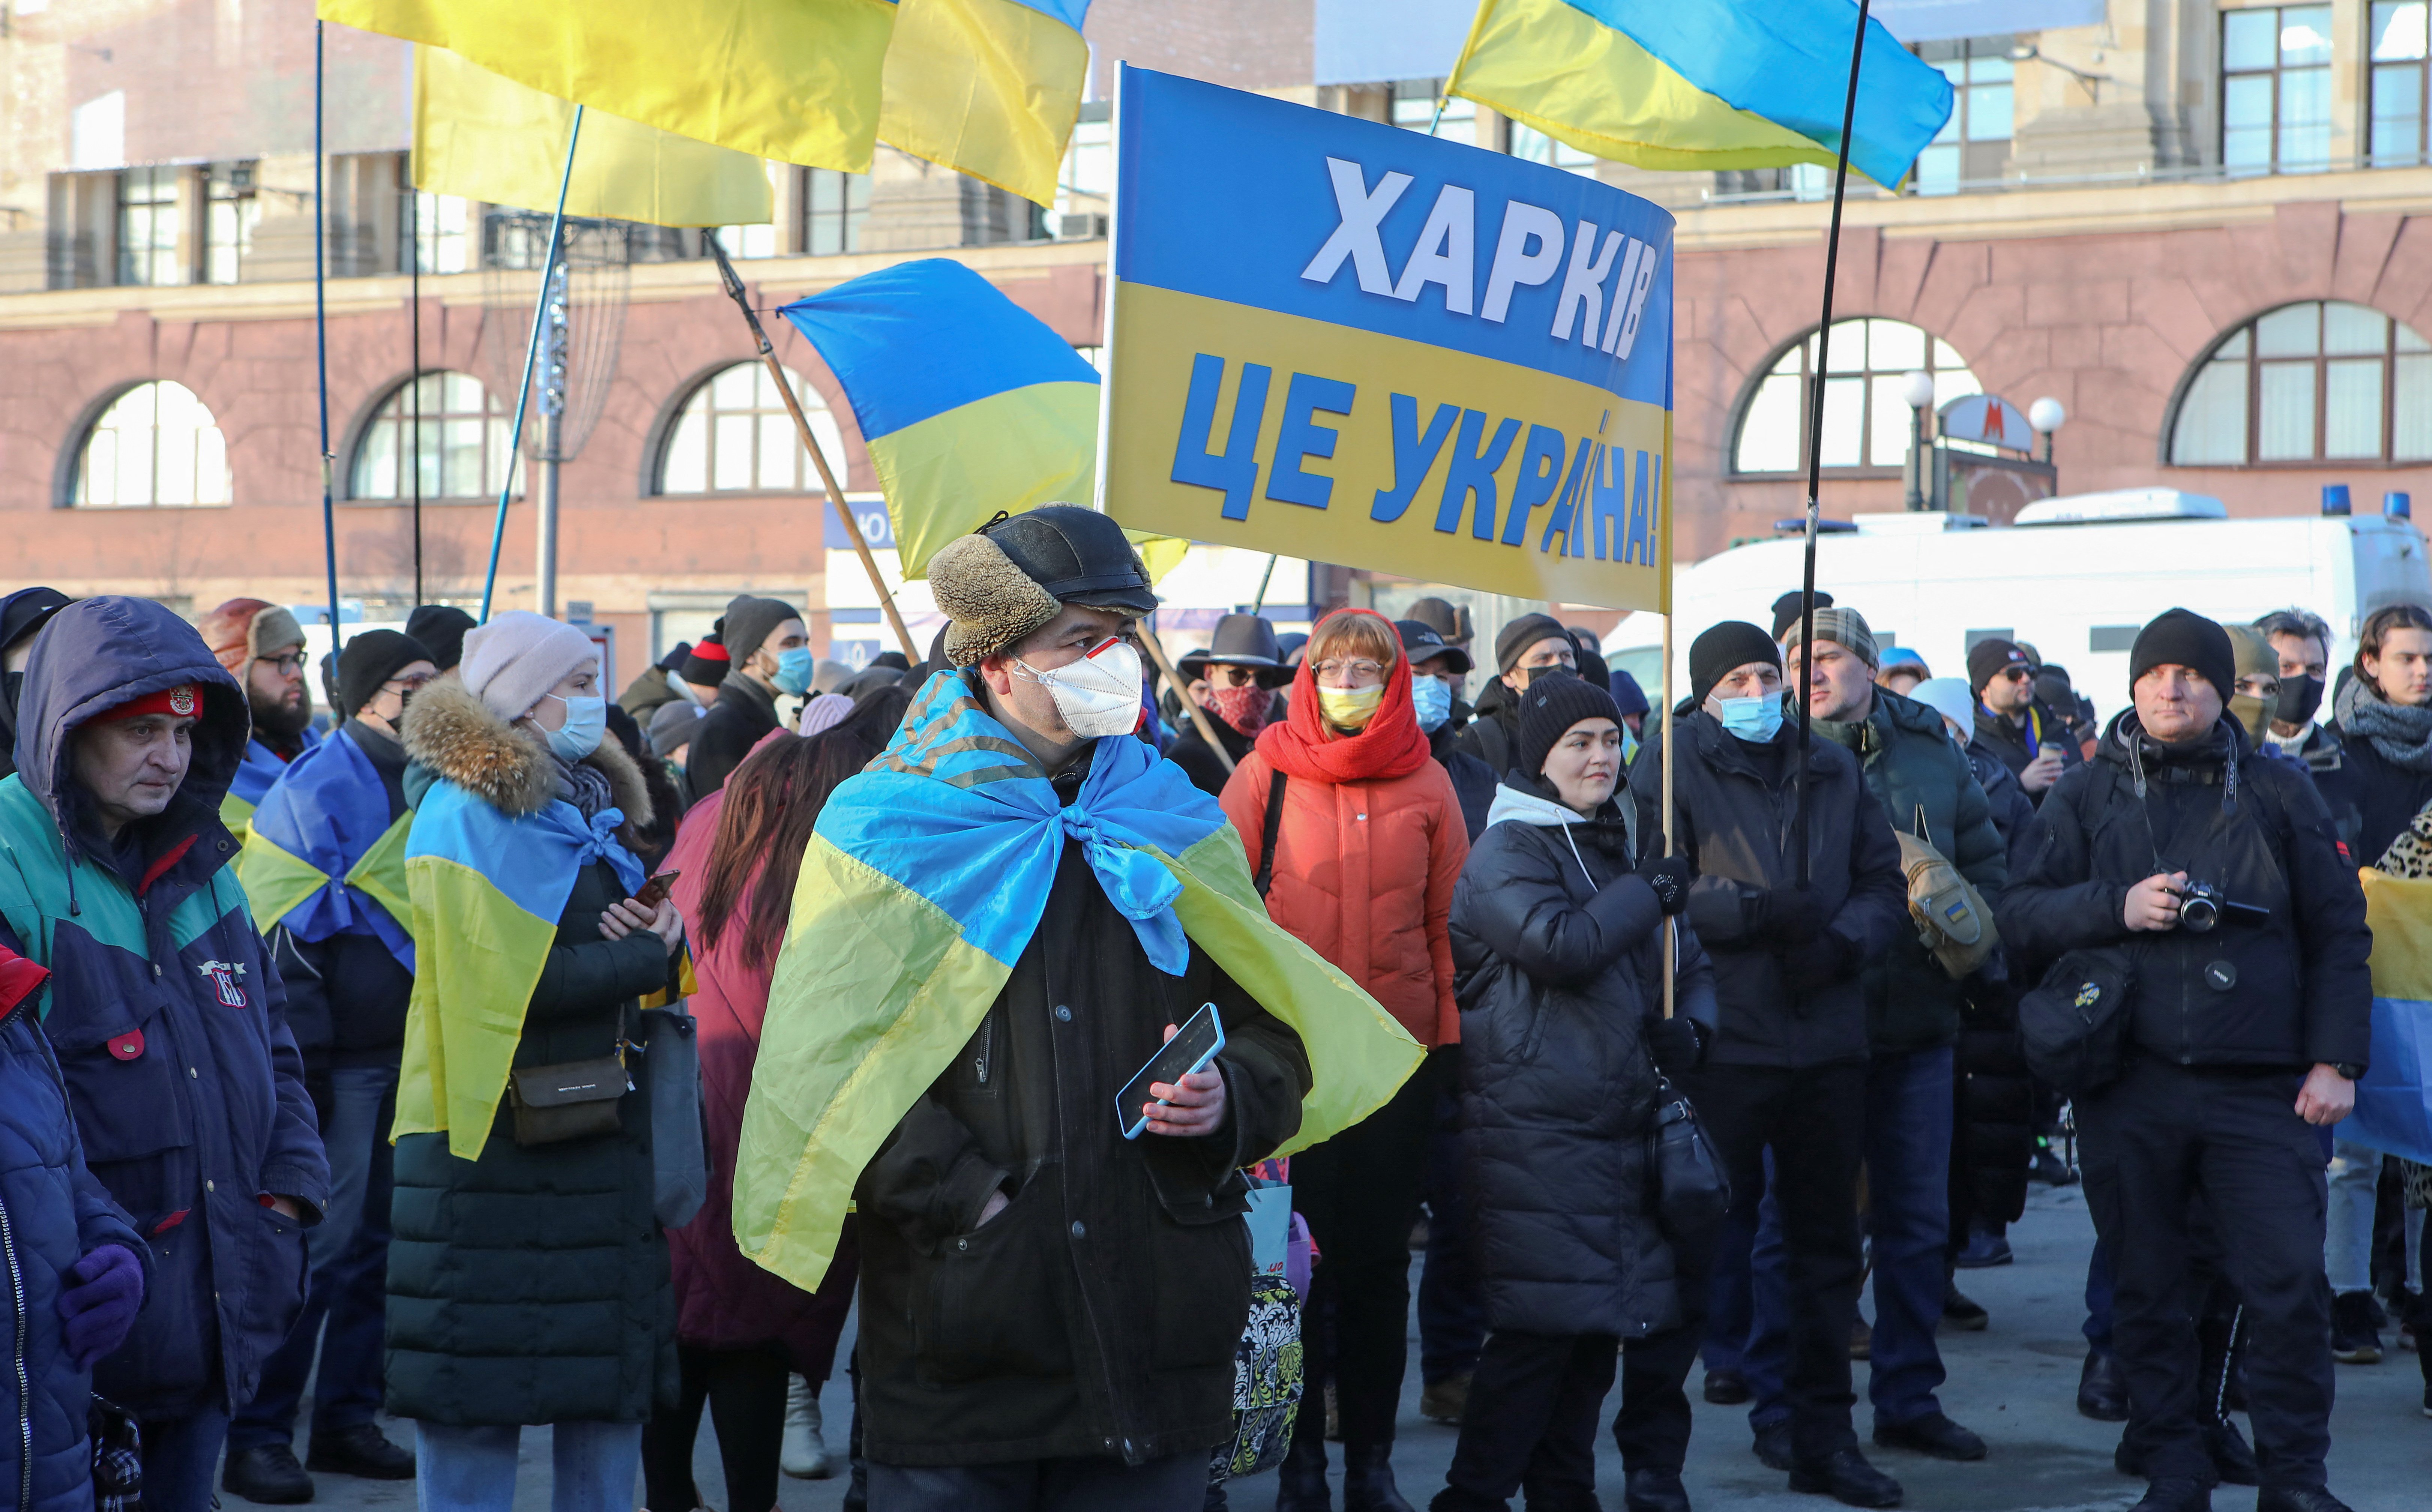 Ukrainians take part in Unity March in Kharkiv